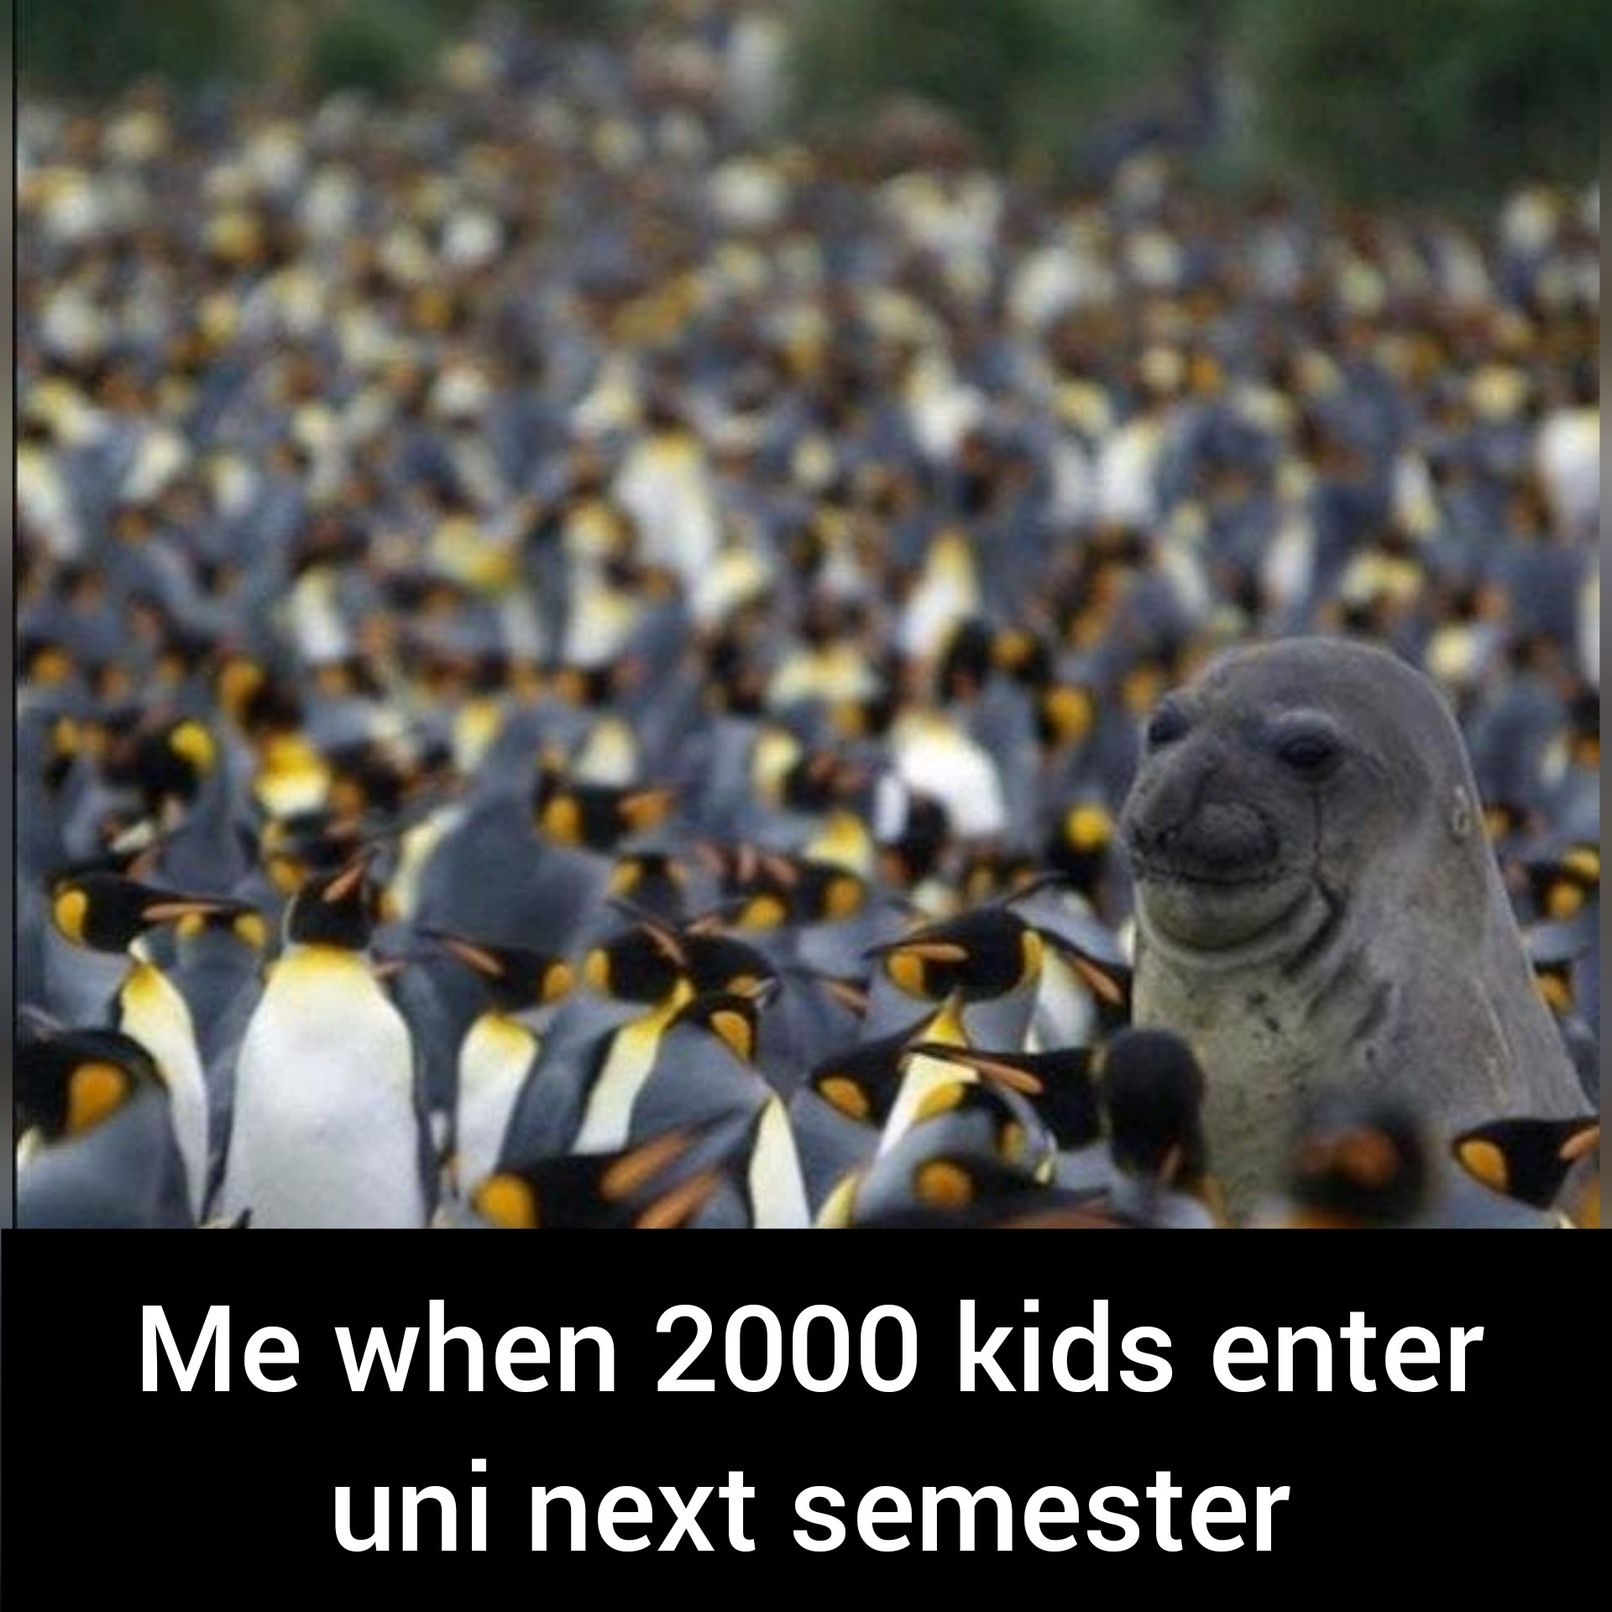 University will forever change - meme